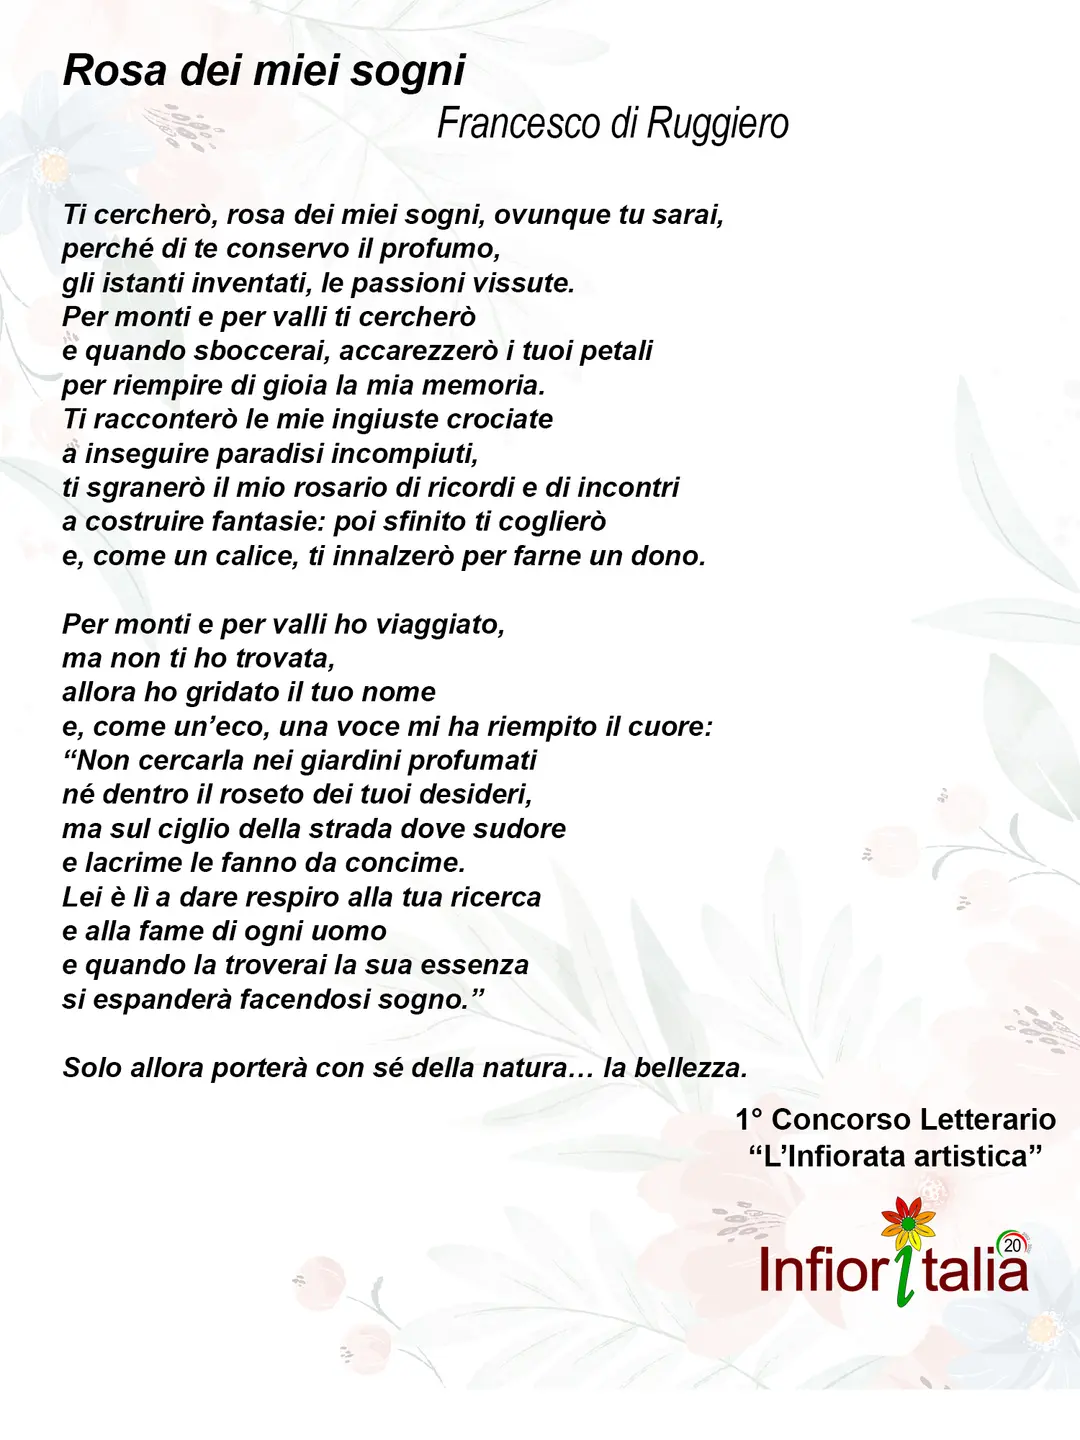 Francesco Di Ruggiero | Rosa dei miei sogni